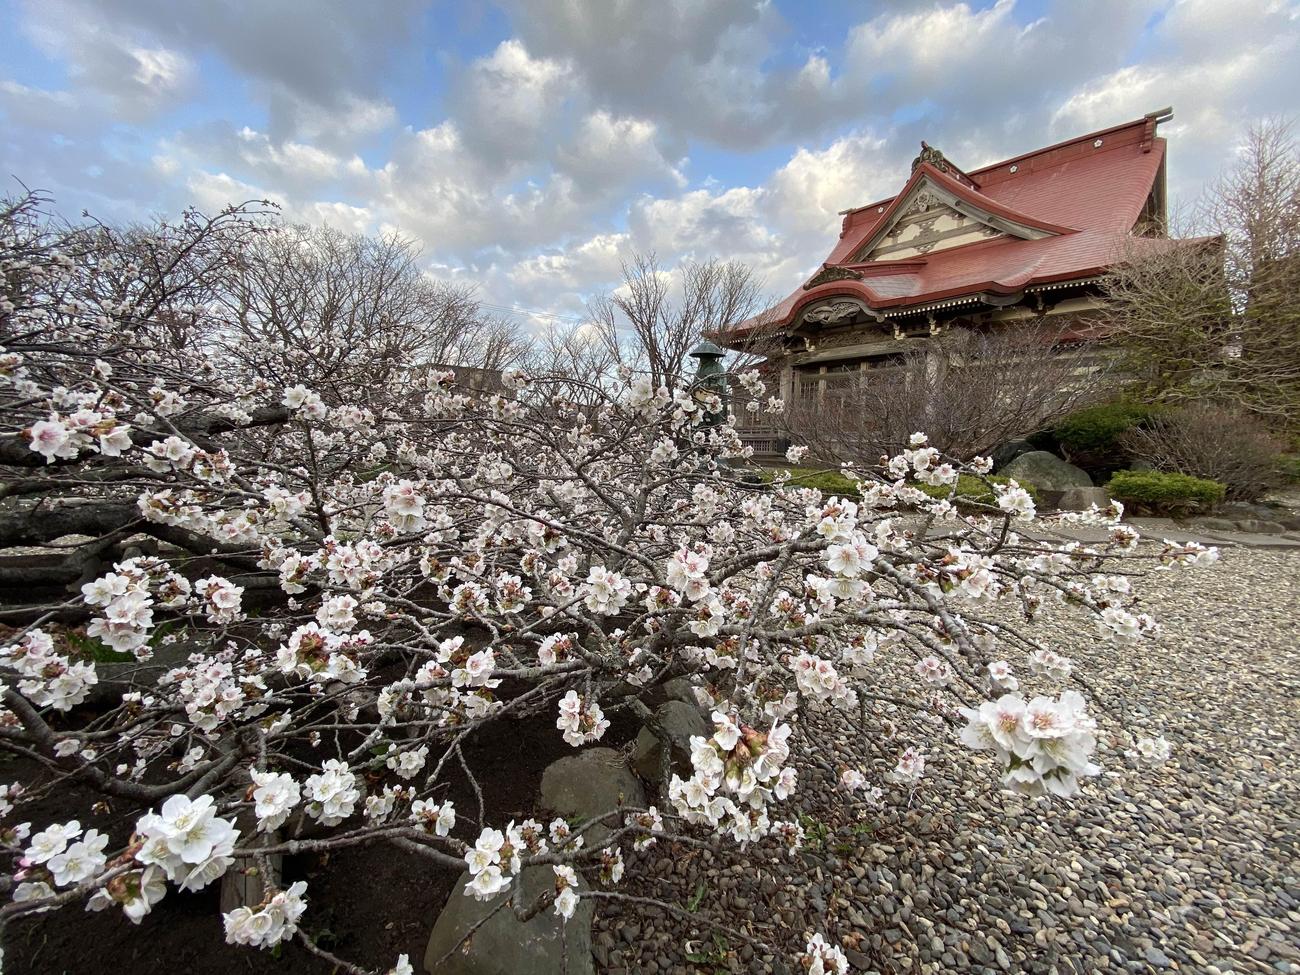 日本で最も遅くに咲く桜として知られる、根室のチシマザク